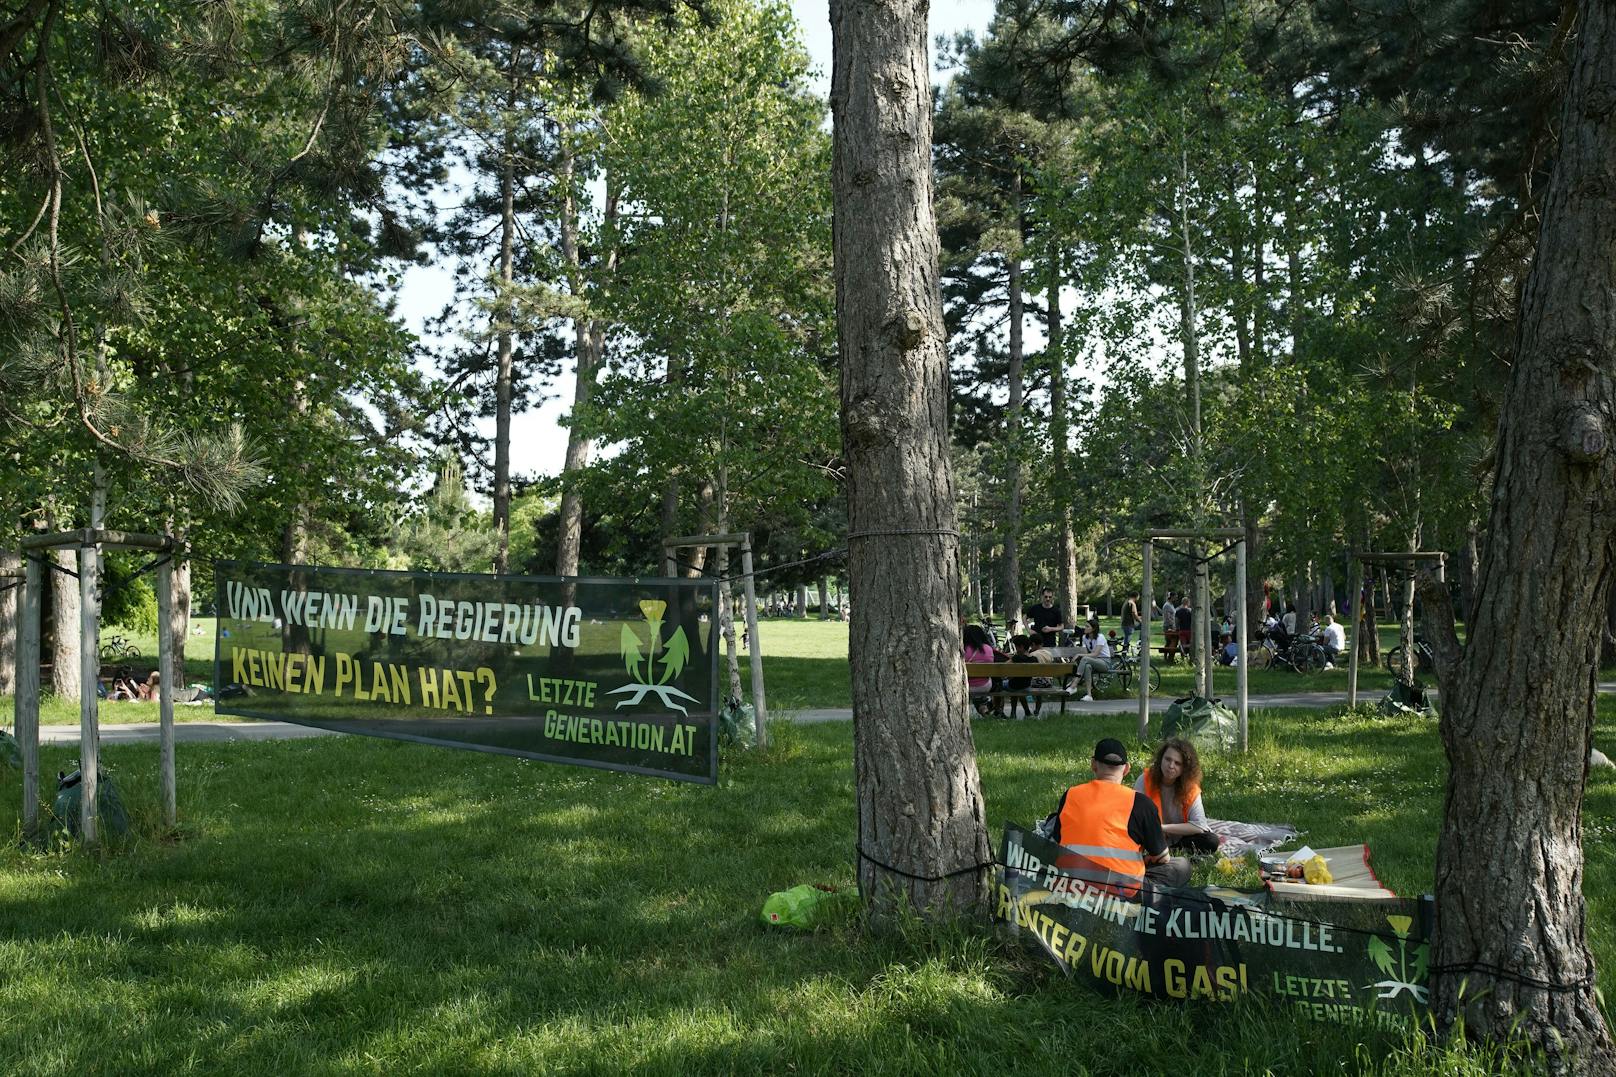 Das Picknick der "Letzten Generation" in Wien entwickelte sich zu einem echten Reinfall.